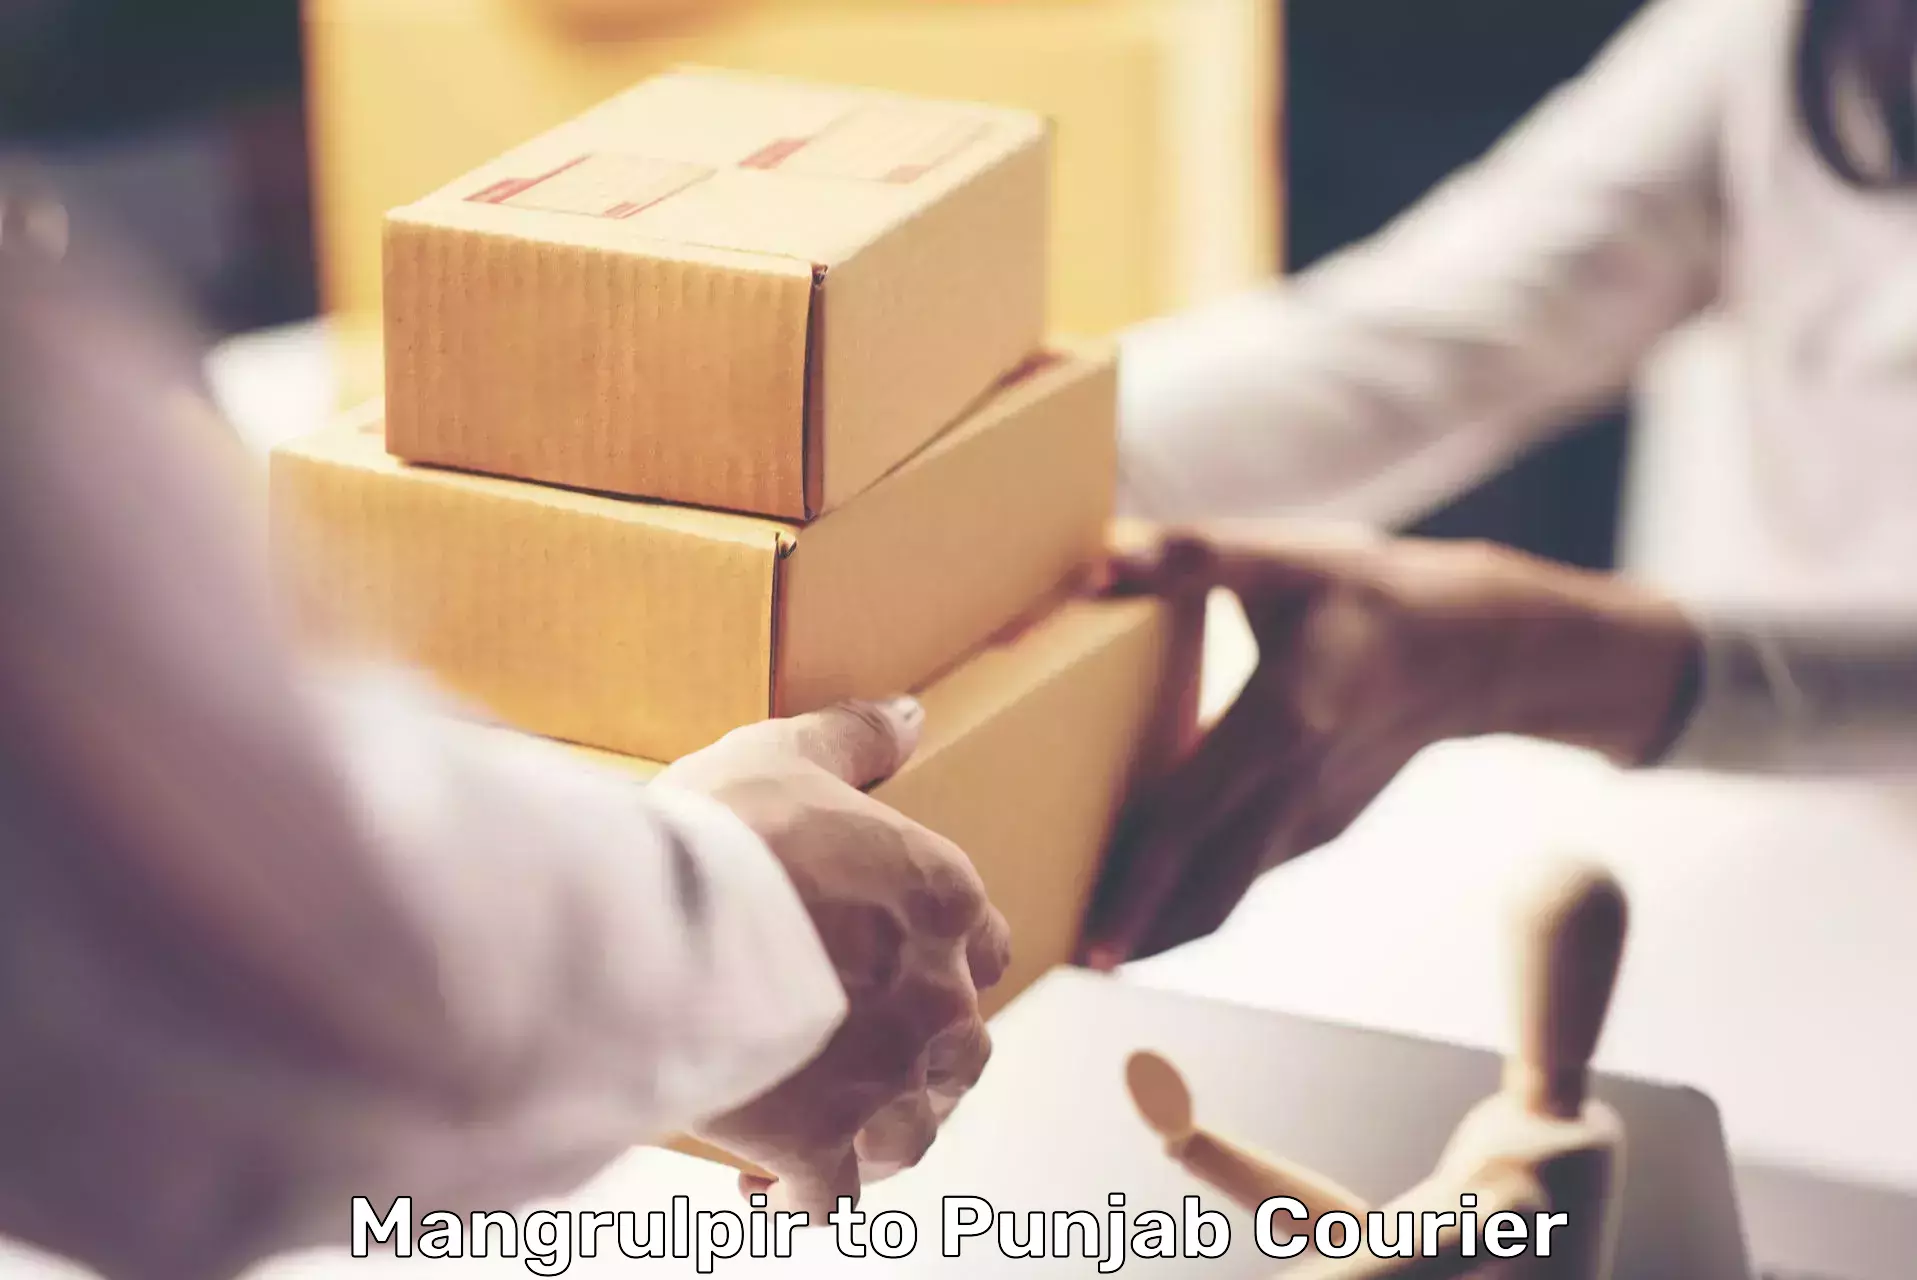 Flexible parcel services Mangrulpir to Batala